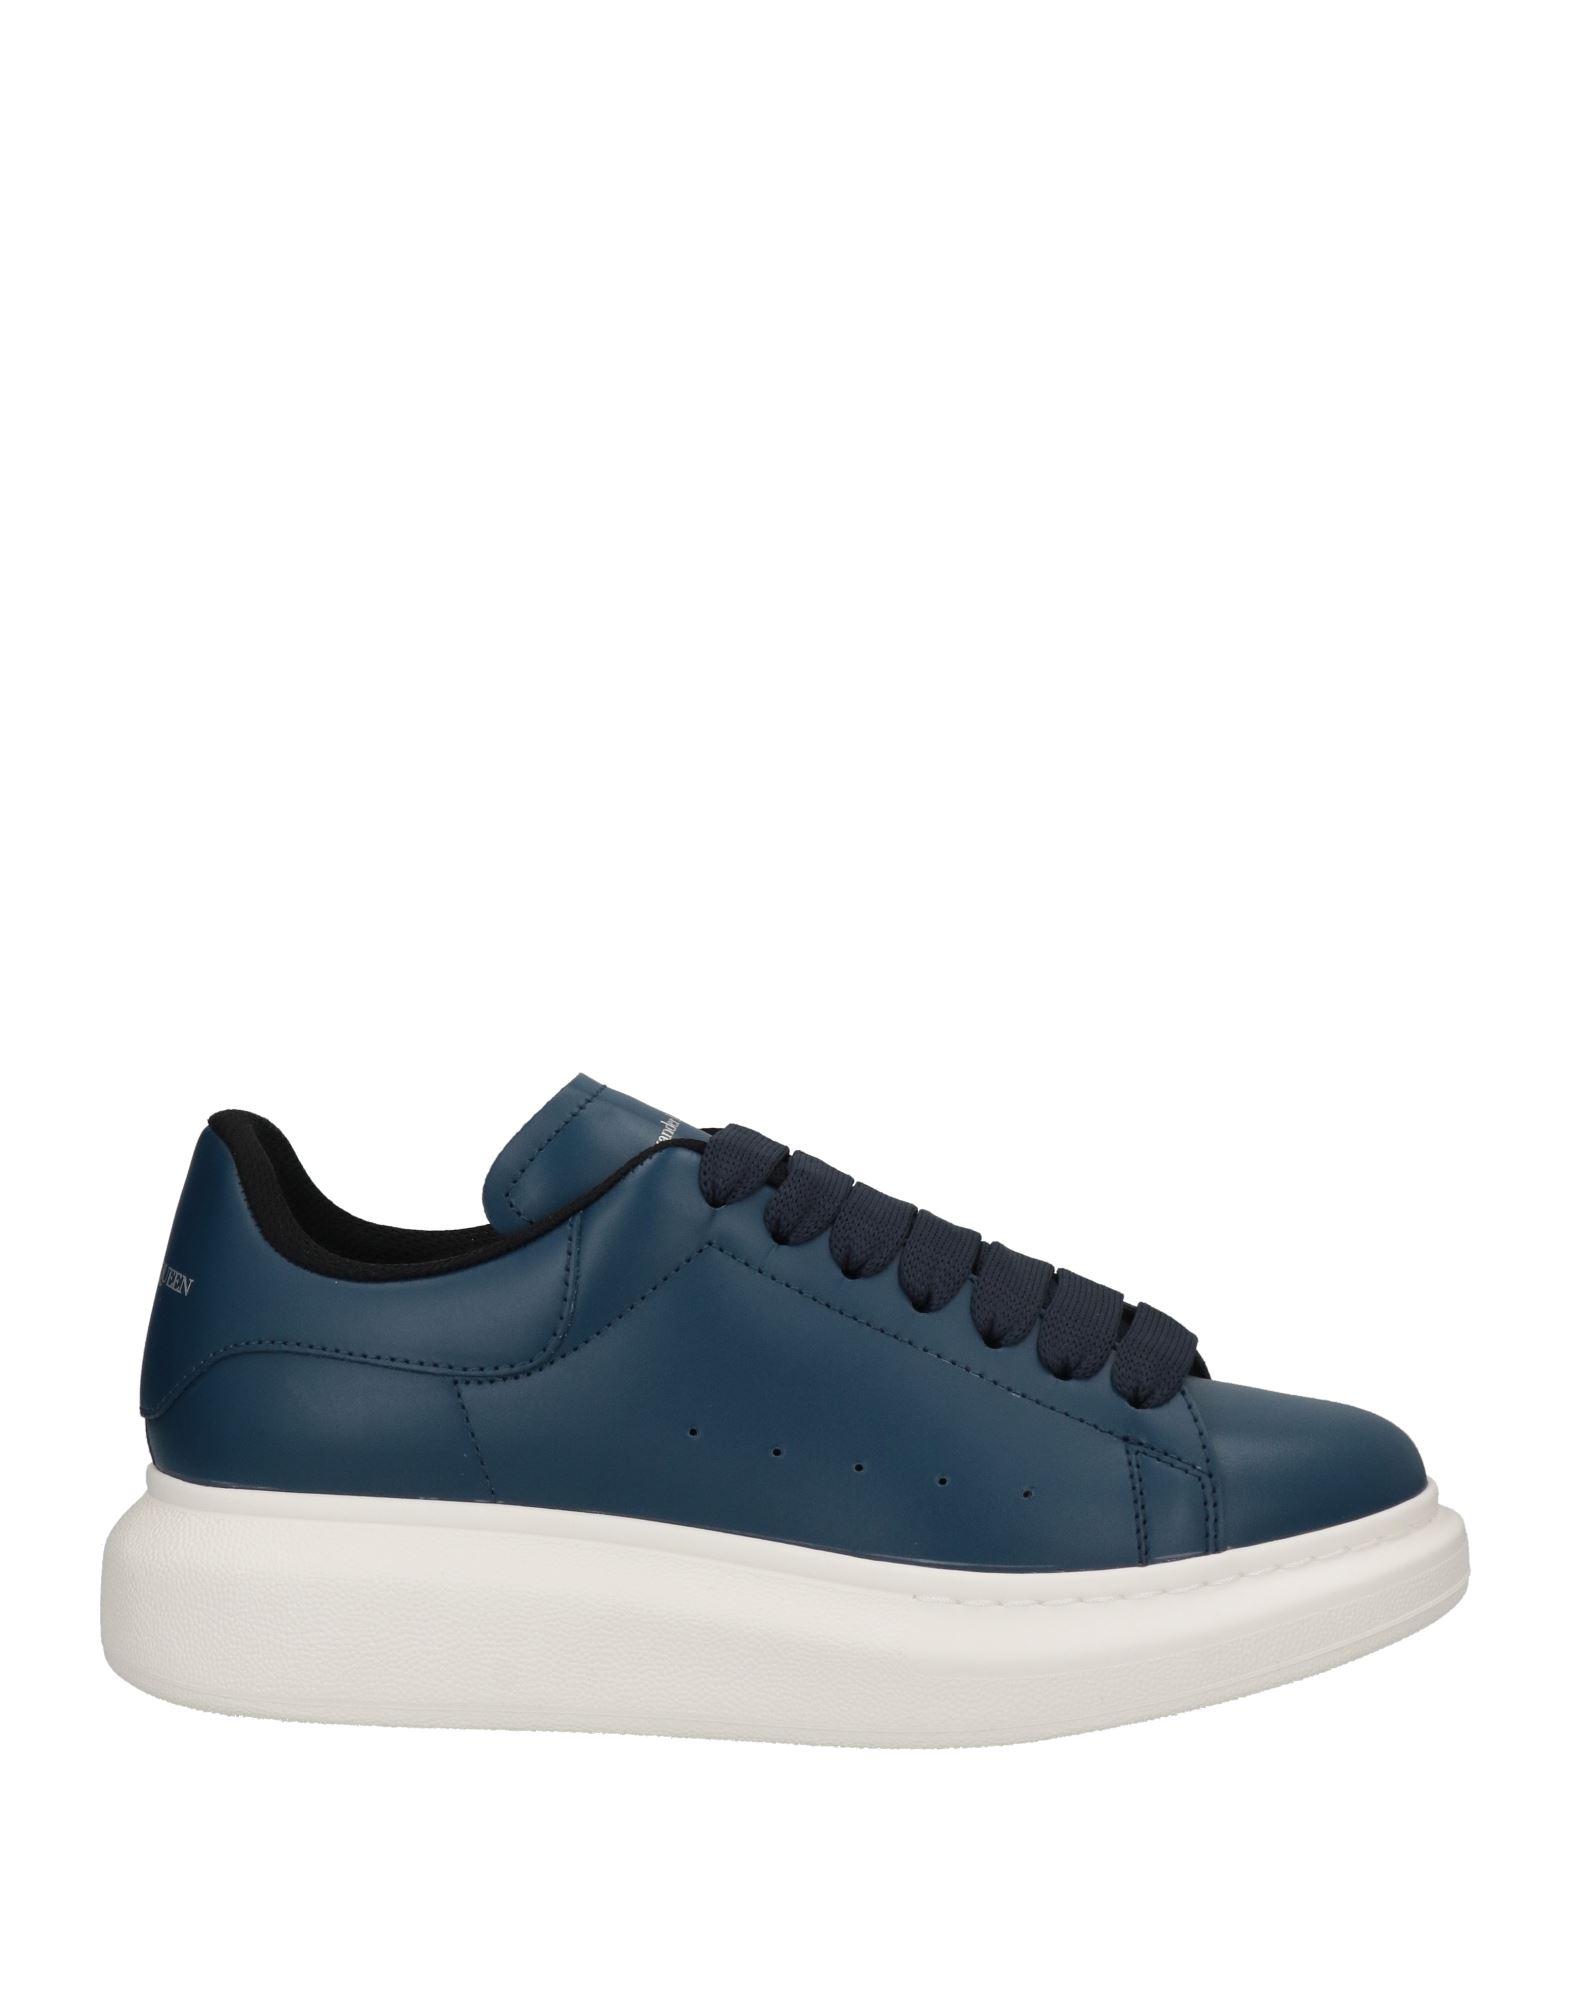 Alexander Mcqueen Sneakers In Navy Blue